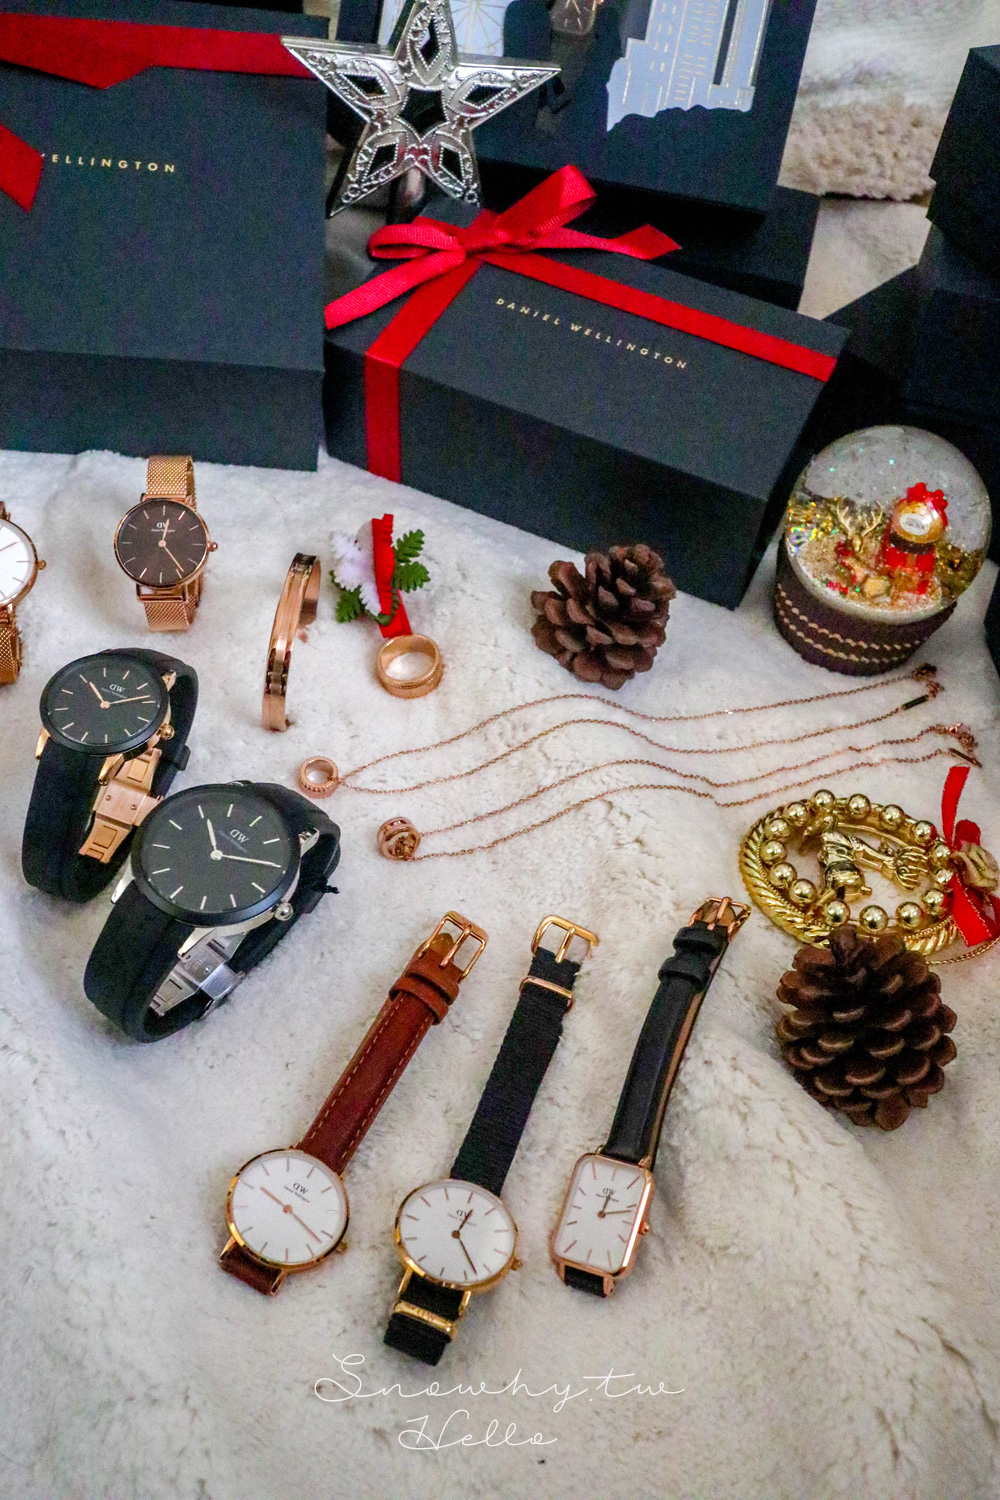 dw折扣碼,dw,dw手錶,DW專屬折扣碼,snowhy,Daniel Wellington,瑞典設計,情侶對錶,85折,dw折扣,dw紅錶帶,聖誕節,dw